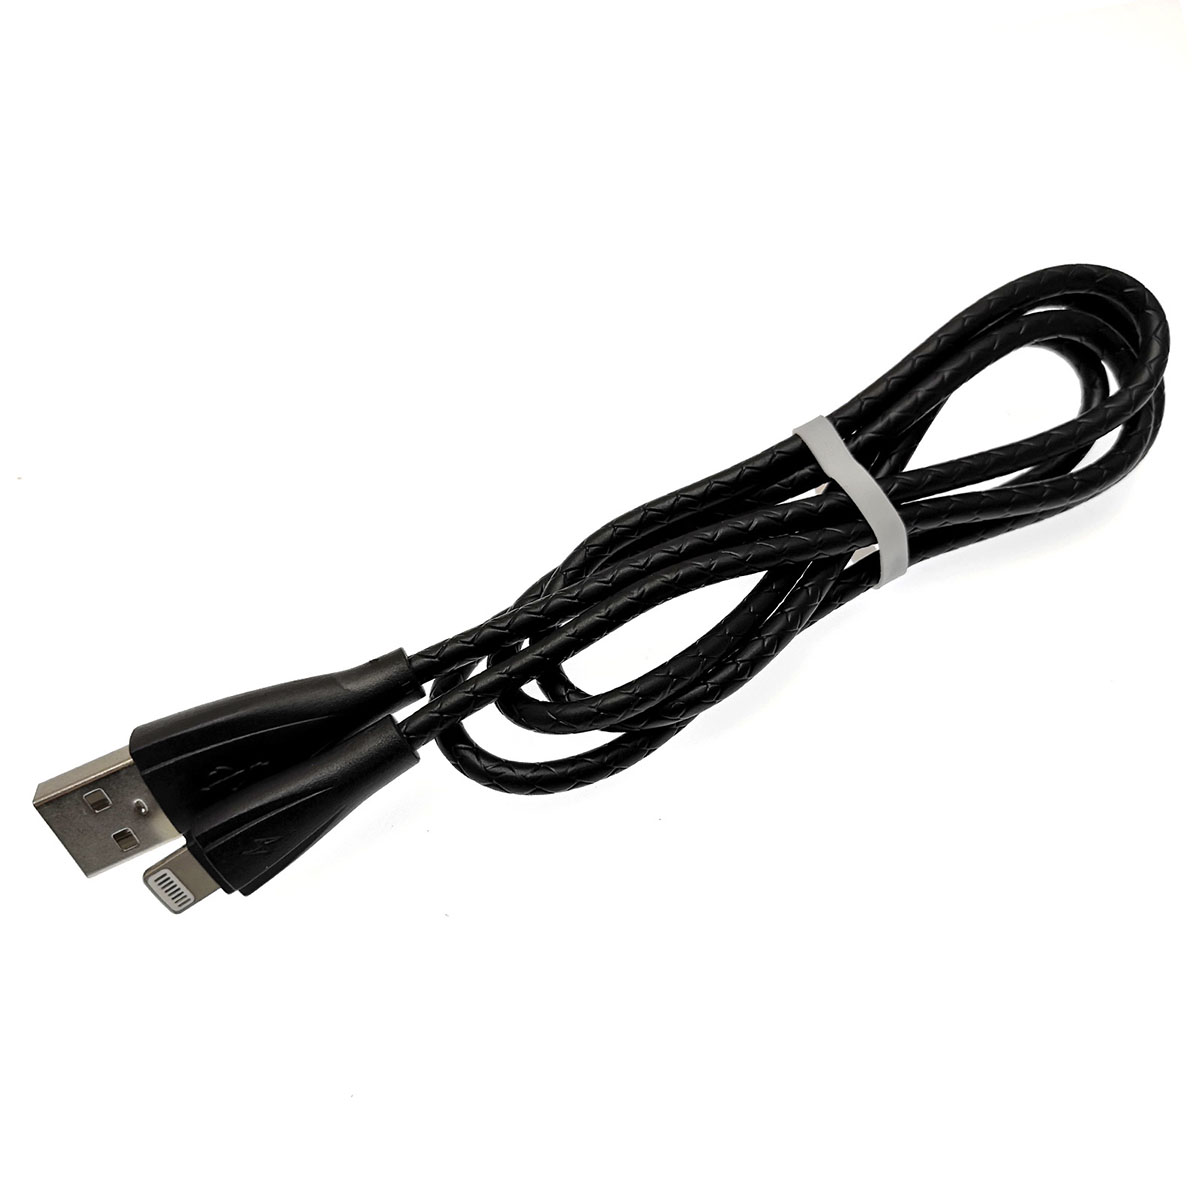 USB Дата кабель APPLE Lightning 8-pin, силиконовый, текстурированная оплетка, длина 1 метр, цвет черный.